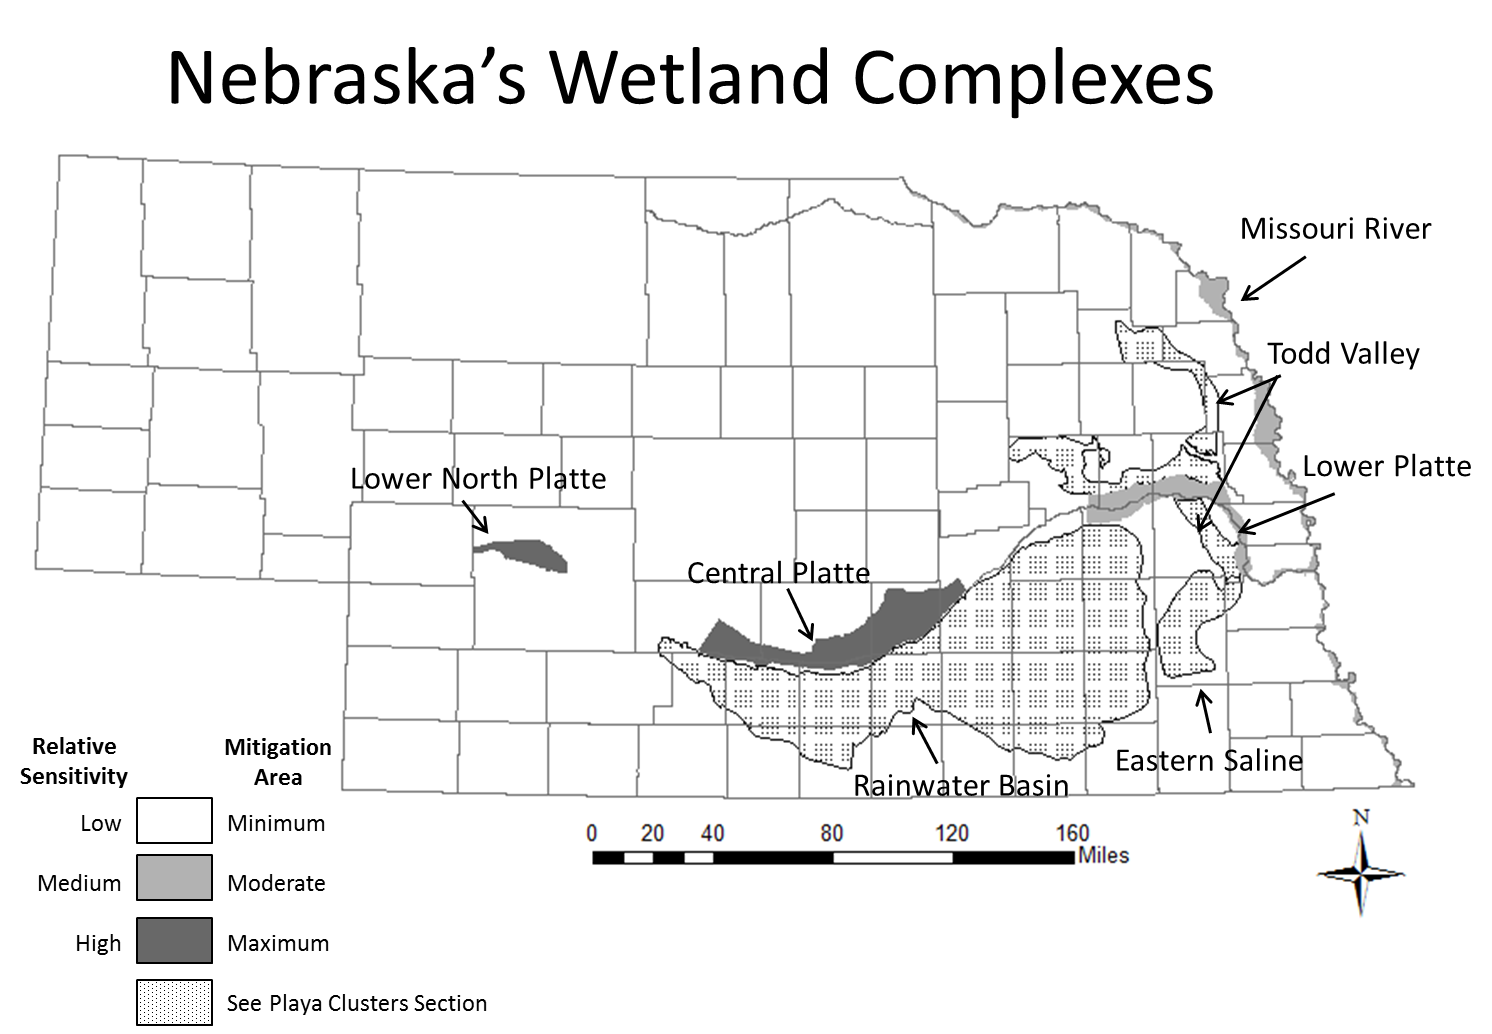 Wetland Complexes in Nebraska